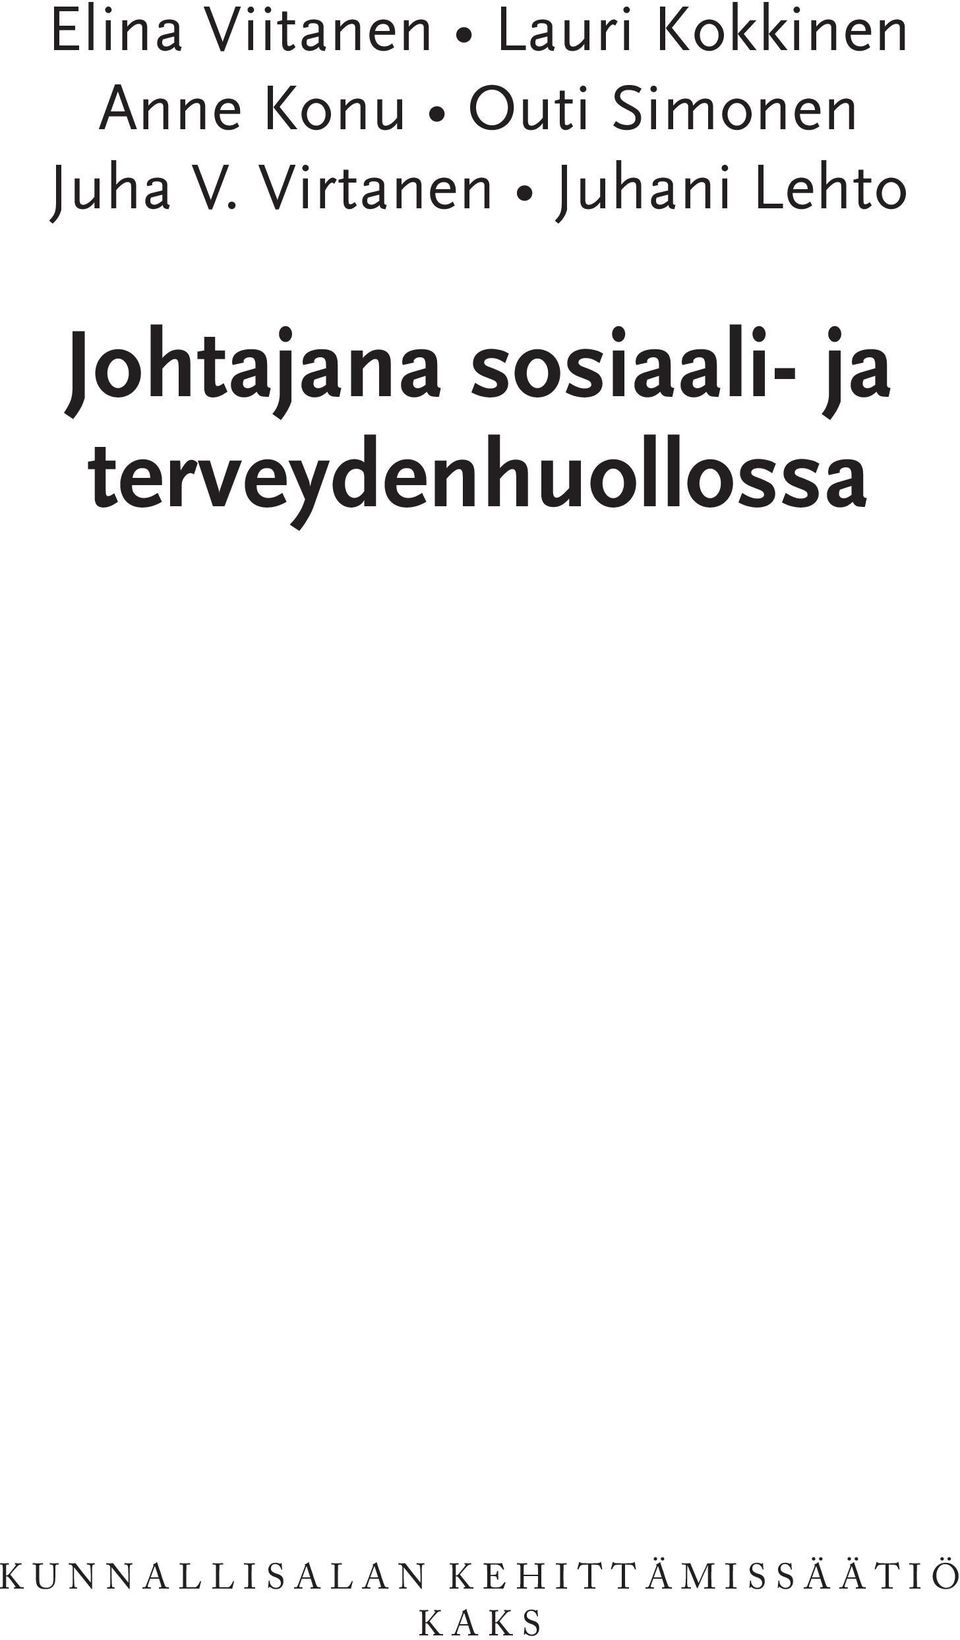 Virtanen Juhani Lehto Johtajana sosiaali- ja